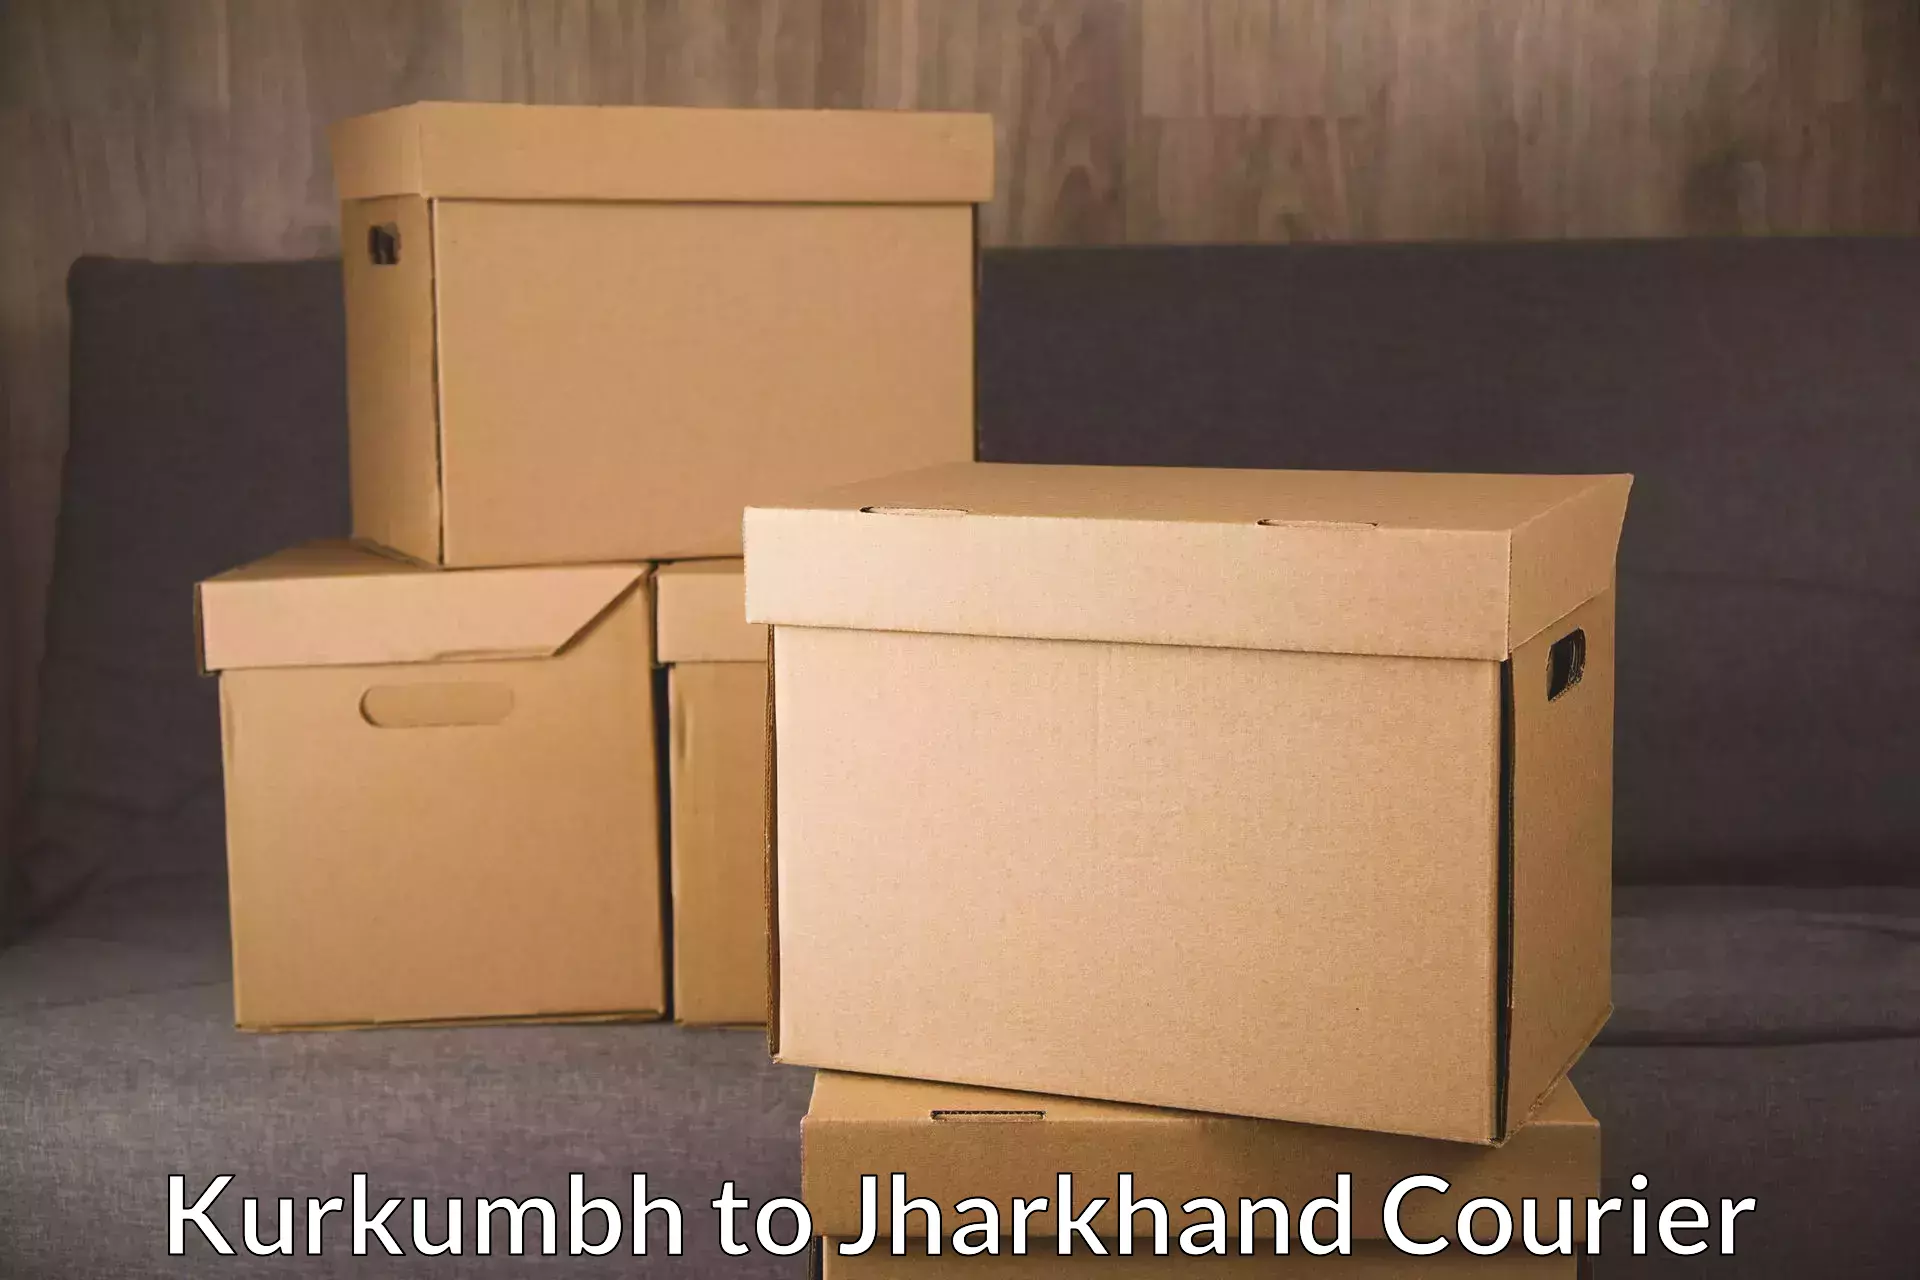 Next-day freight services Kurkumbh to Jharkhand